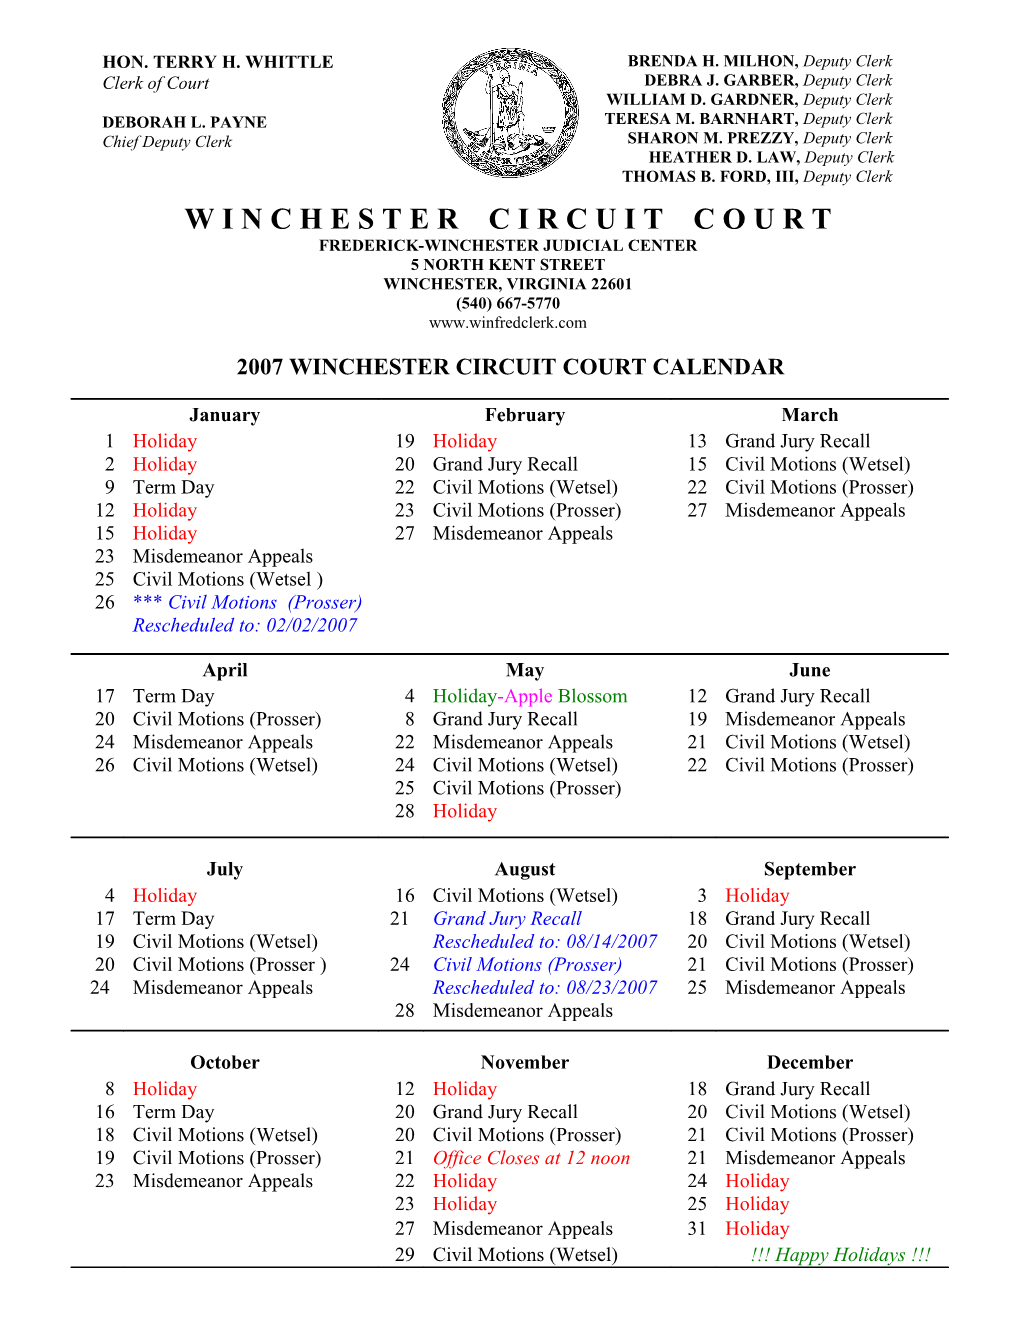 2007 Winchester Circuit Court Calendar